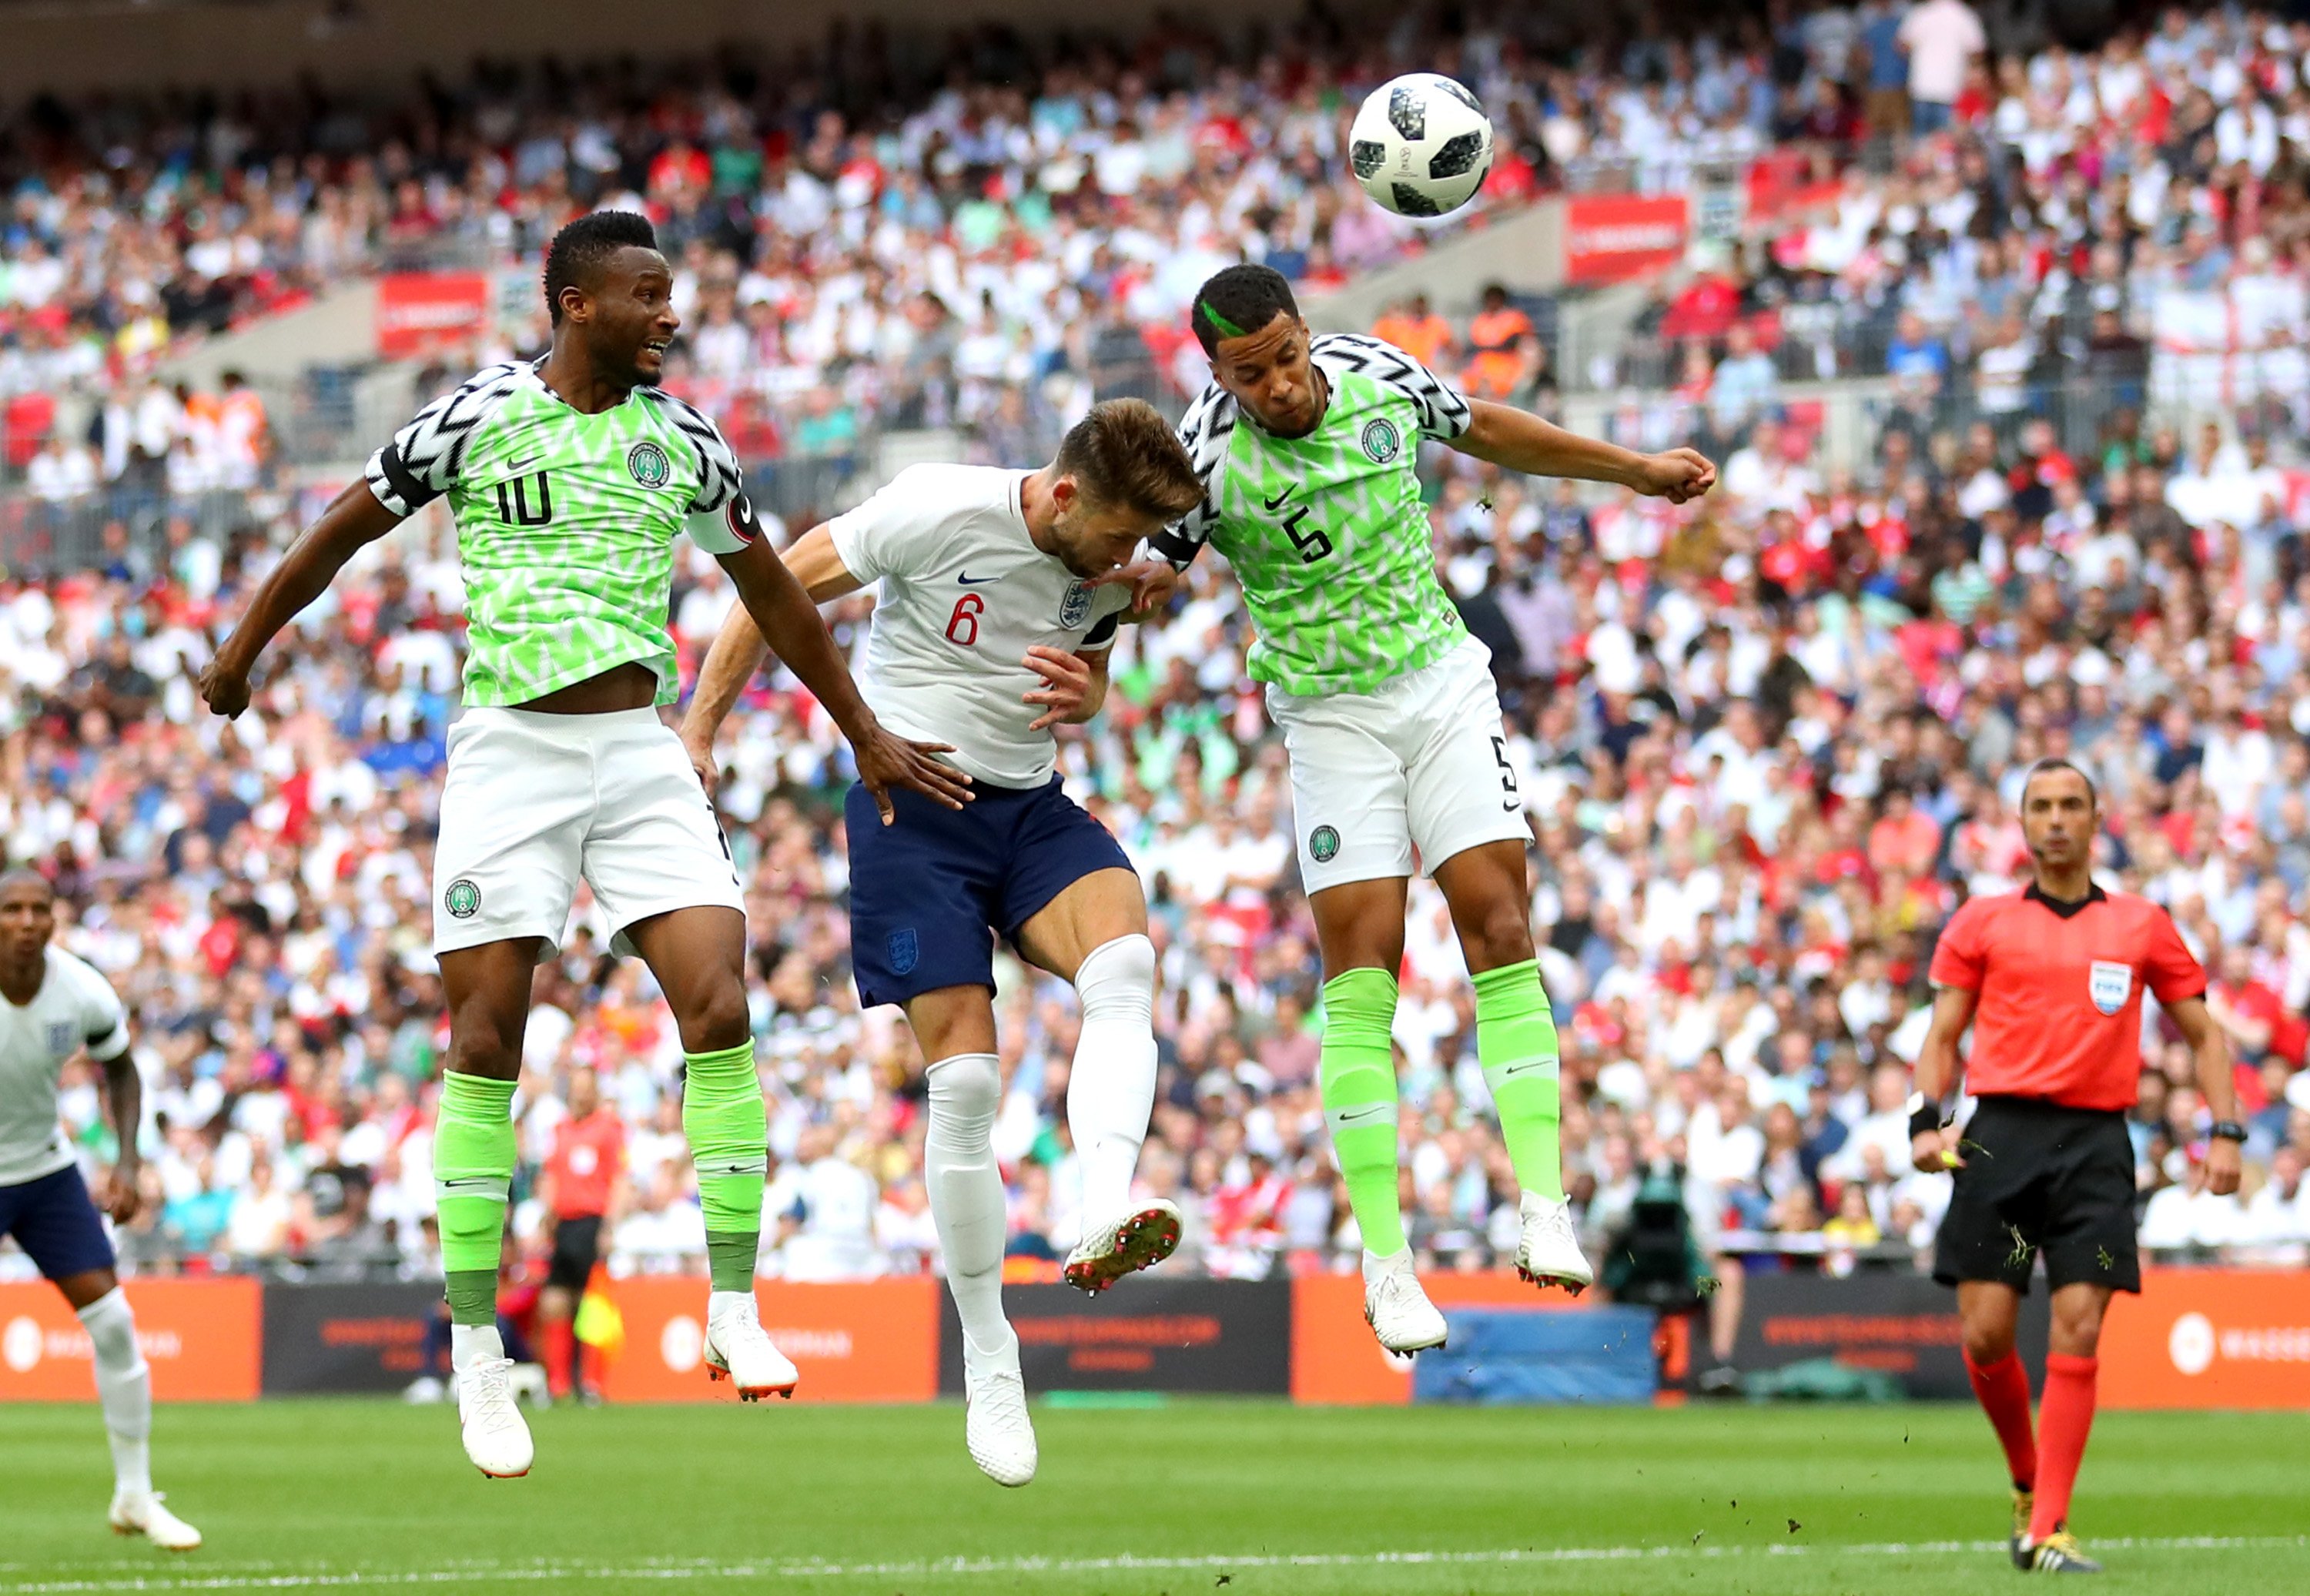 England beat Nigeria 2-1 in a friendly